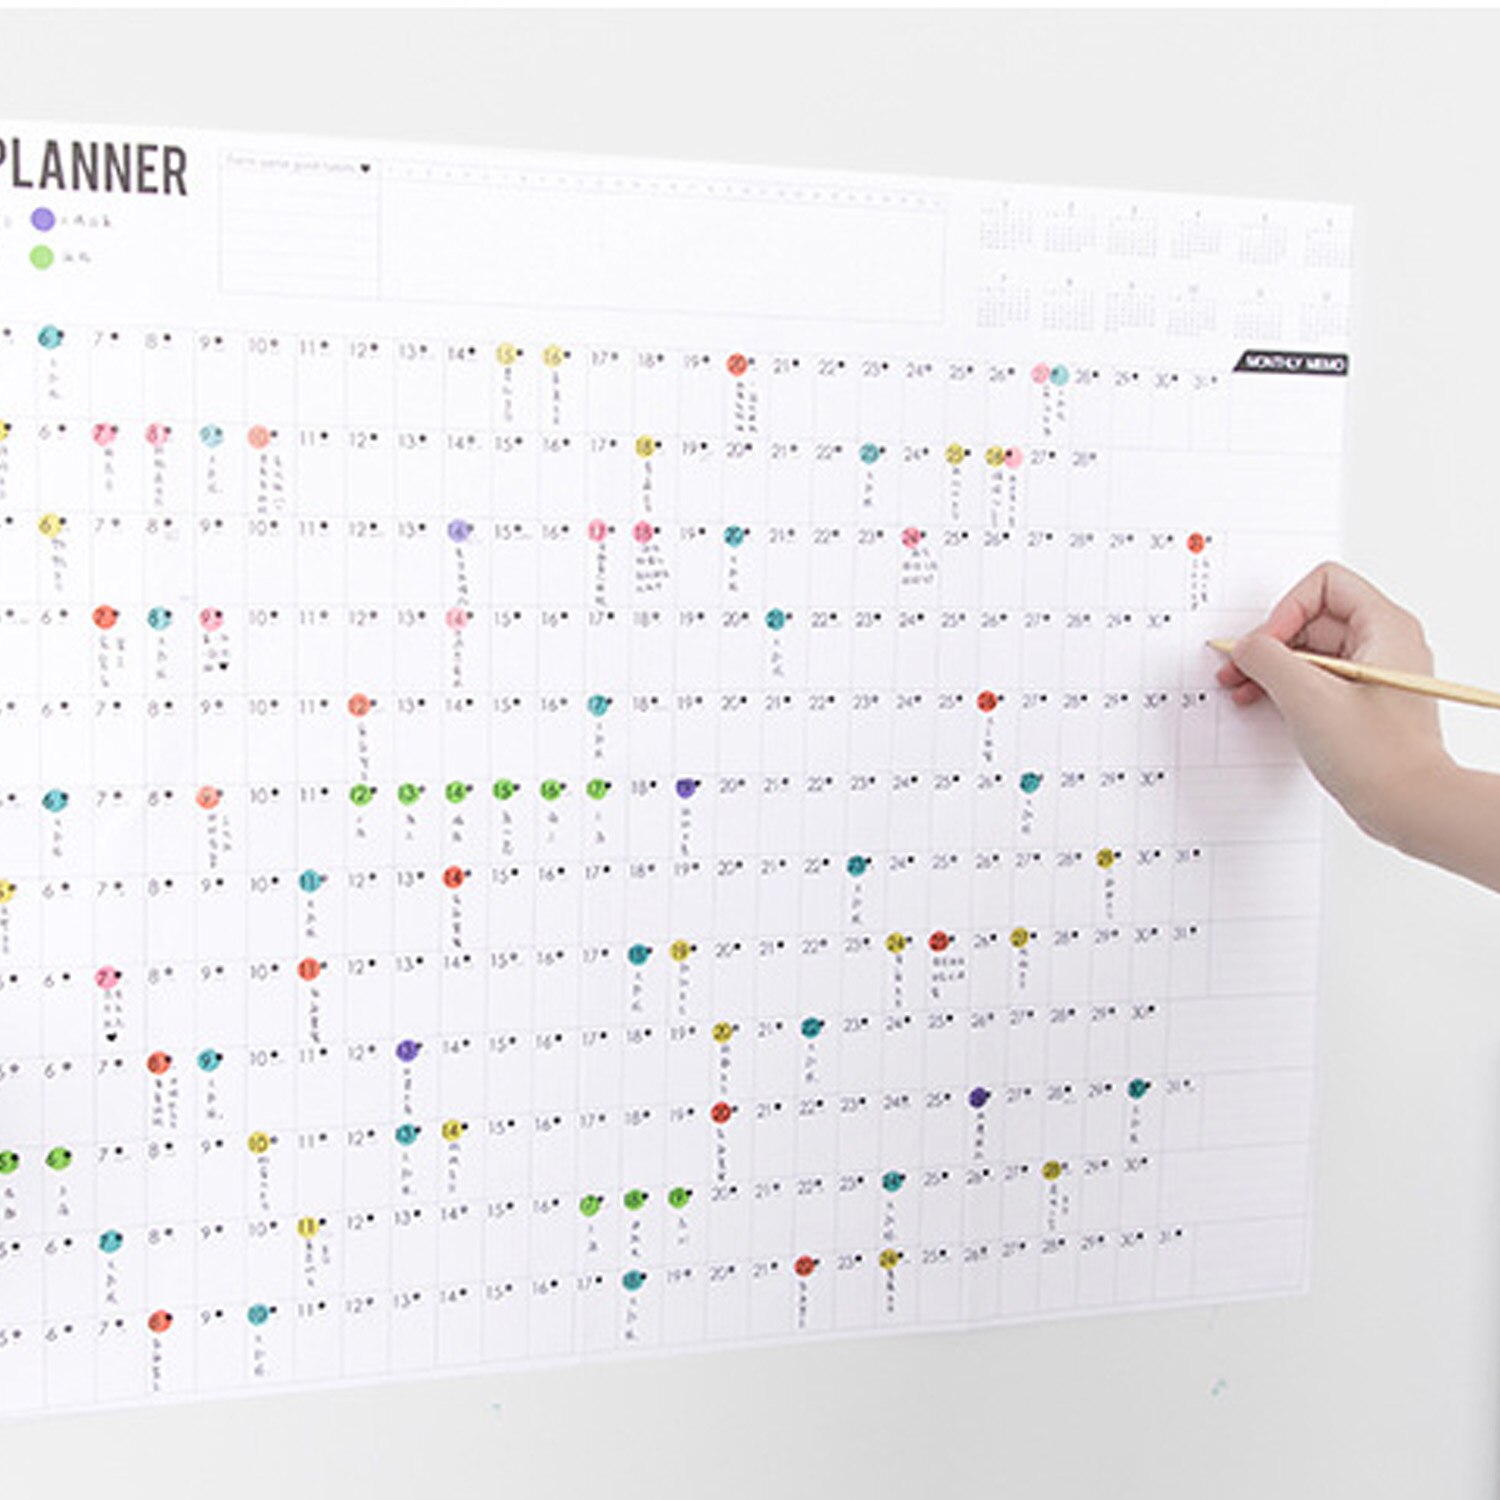 Vægkalender blok år planner daglig plan papir kalender med 2 ark eva mark klistermærker til kontorskole hjemmeartikler